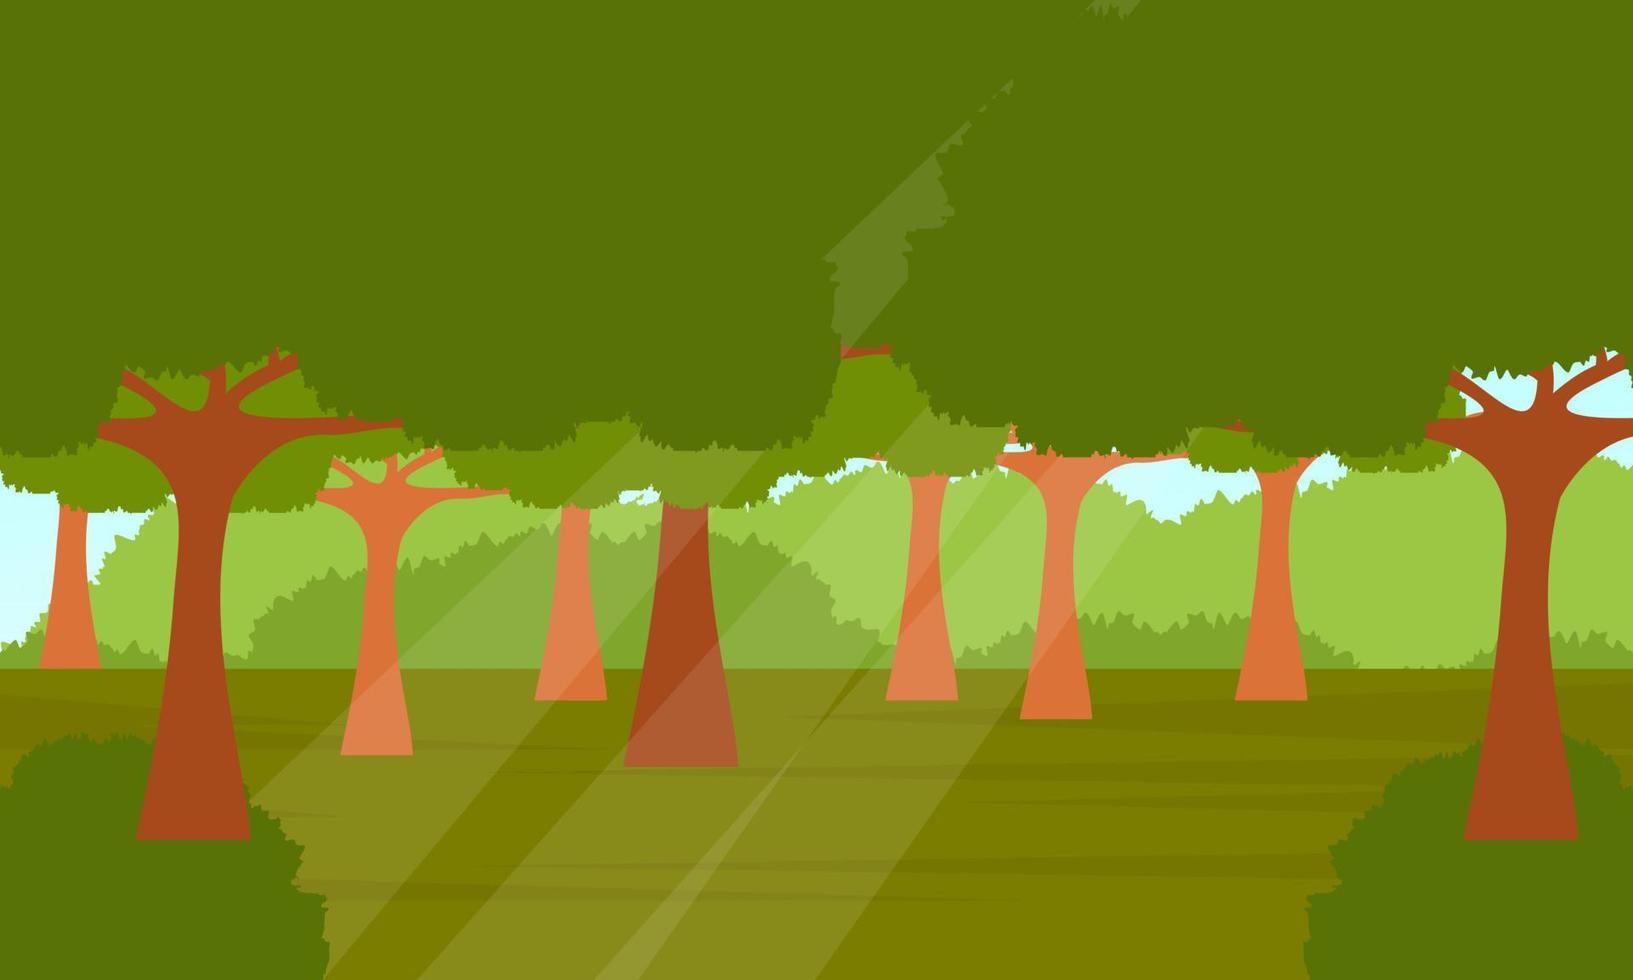 djungellandskap. panorama med tropiska växter, lianer och trädstam med fallande solljus på grönt gräs på marken vektor